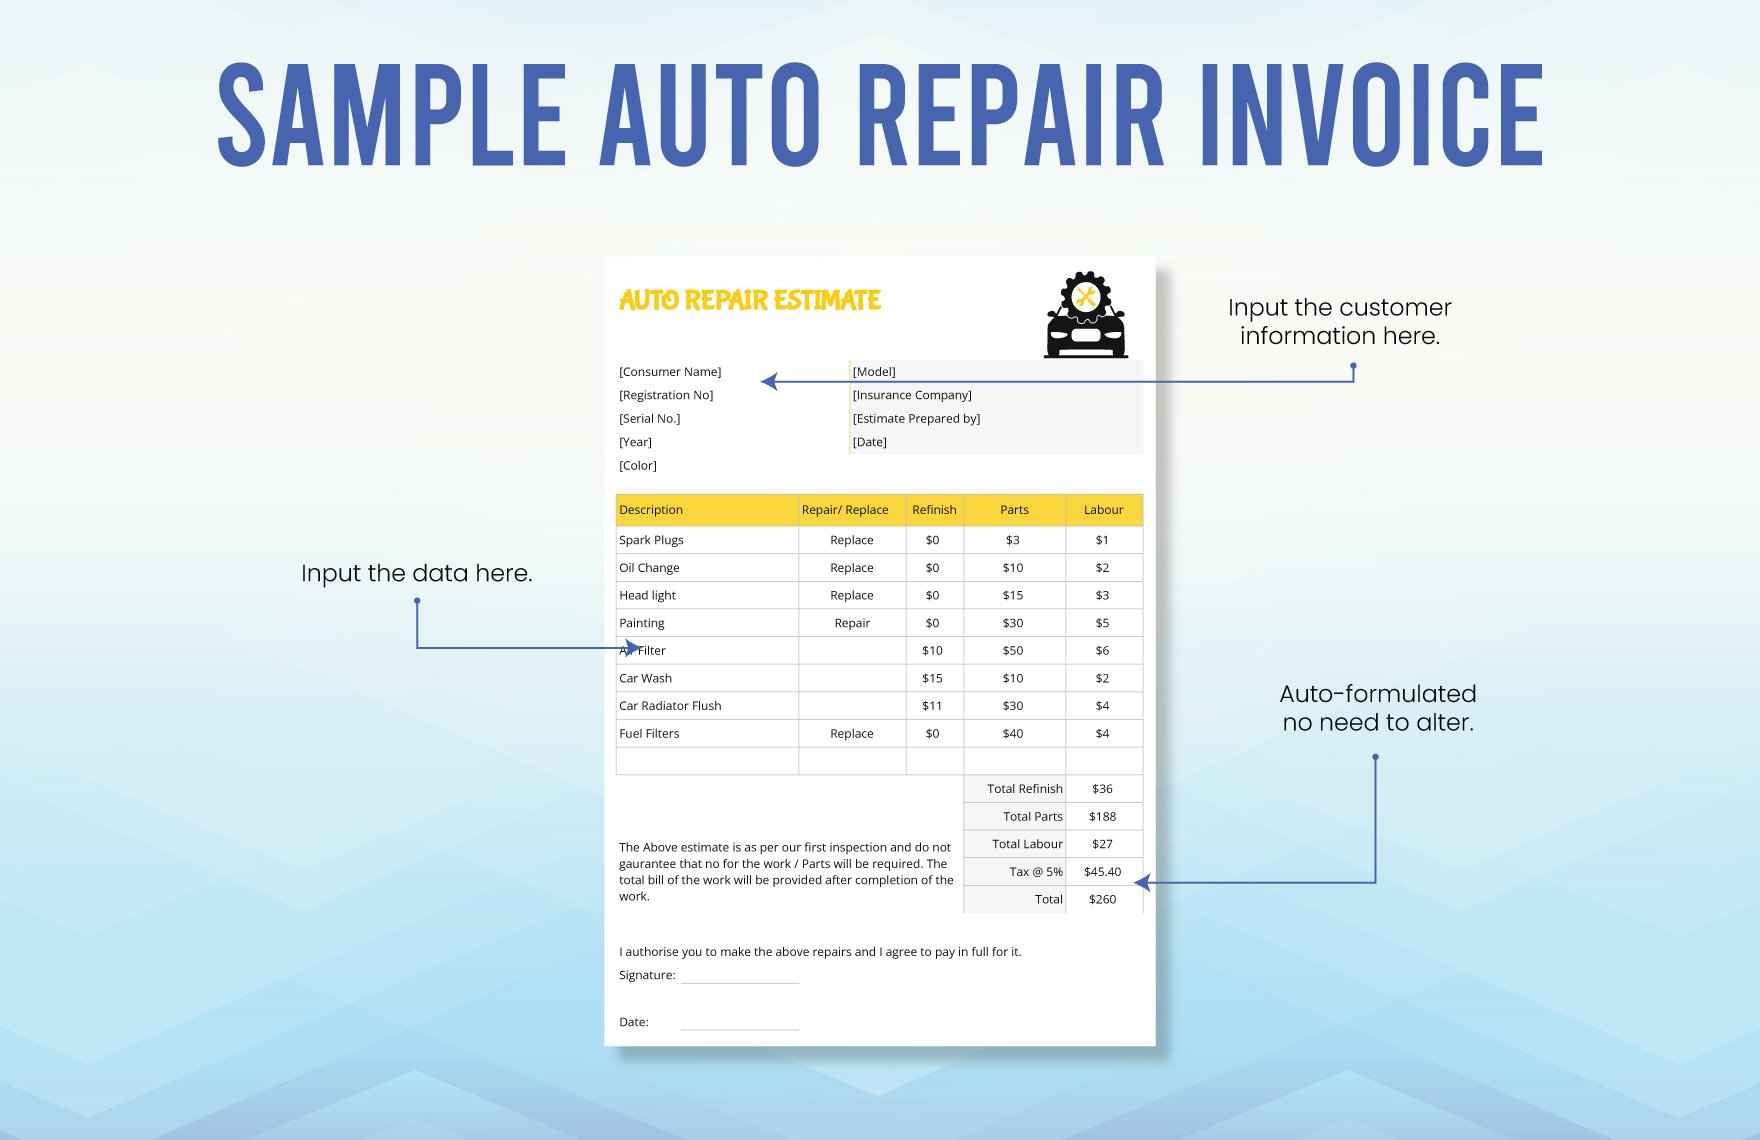 Sample Auto Repair Invoice Template